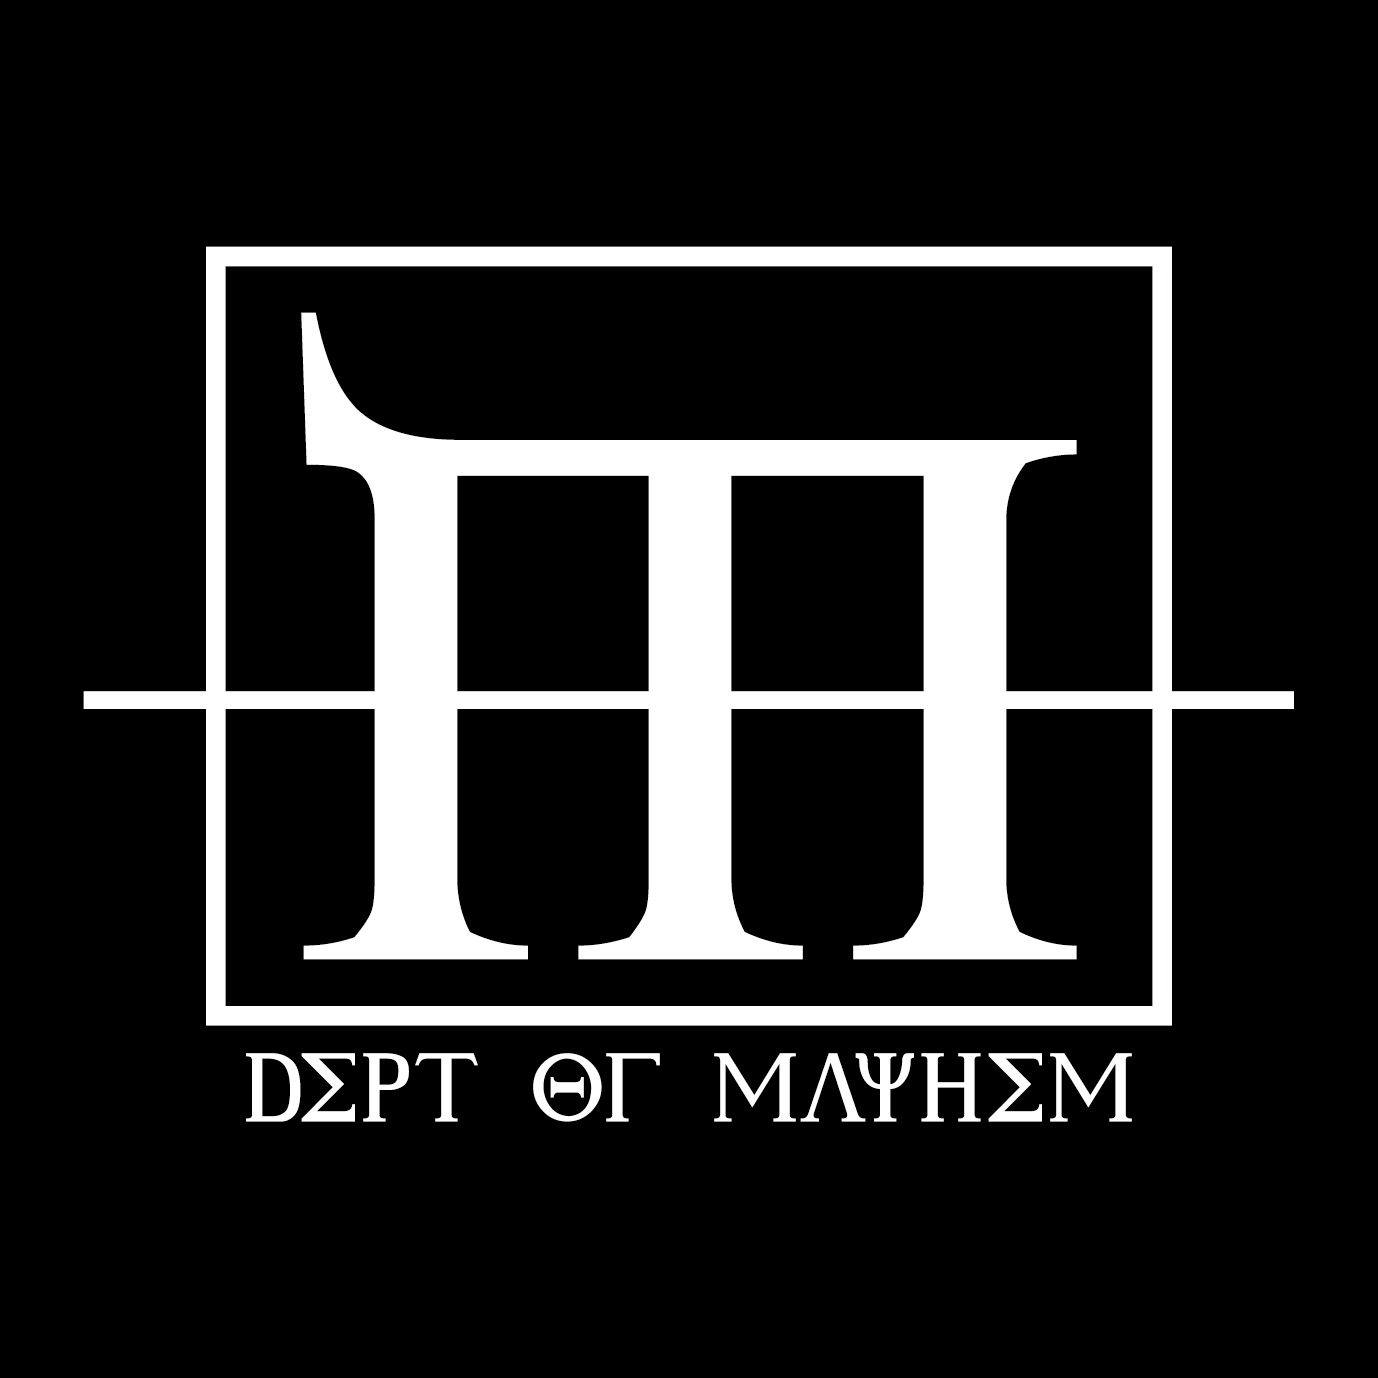 DEPT OF MAYHEM